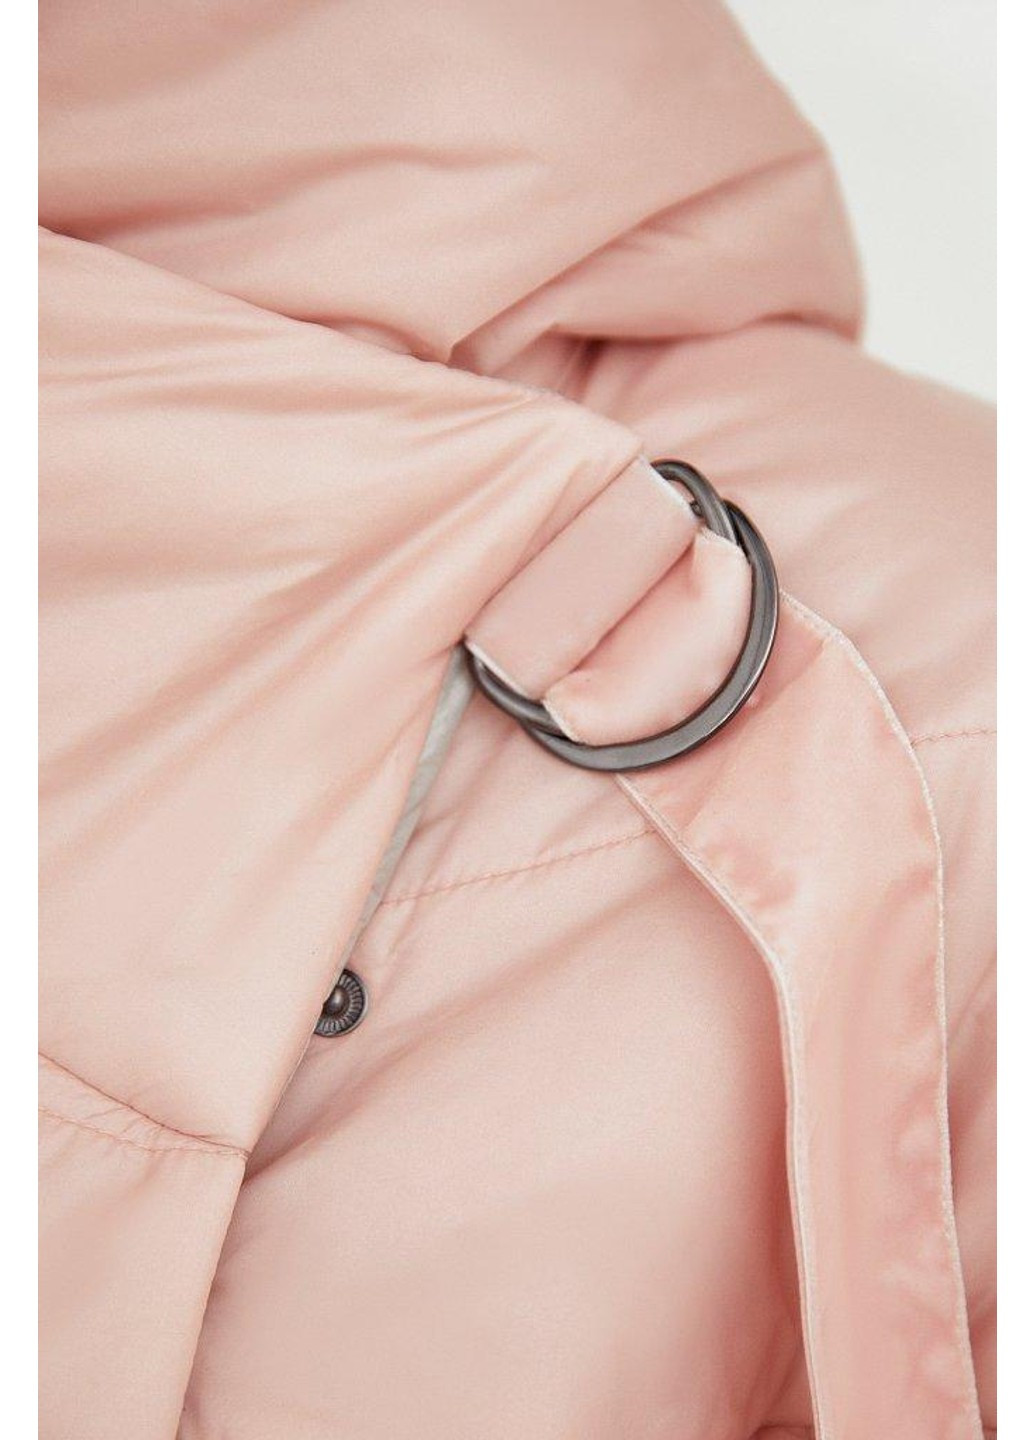 Розовая демисезонная куртка b21-11007-331 Finn Flare